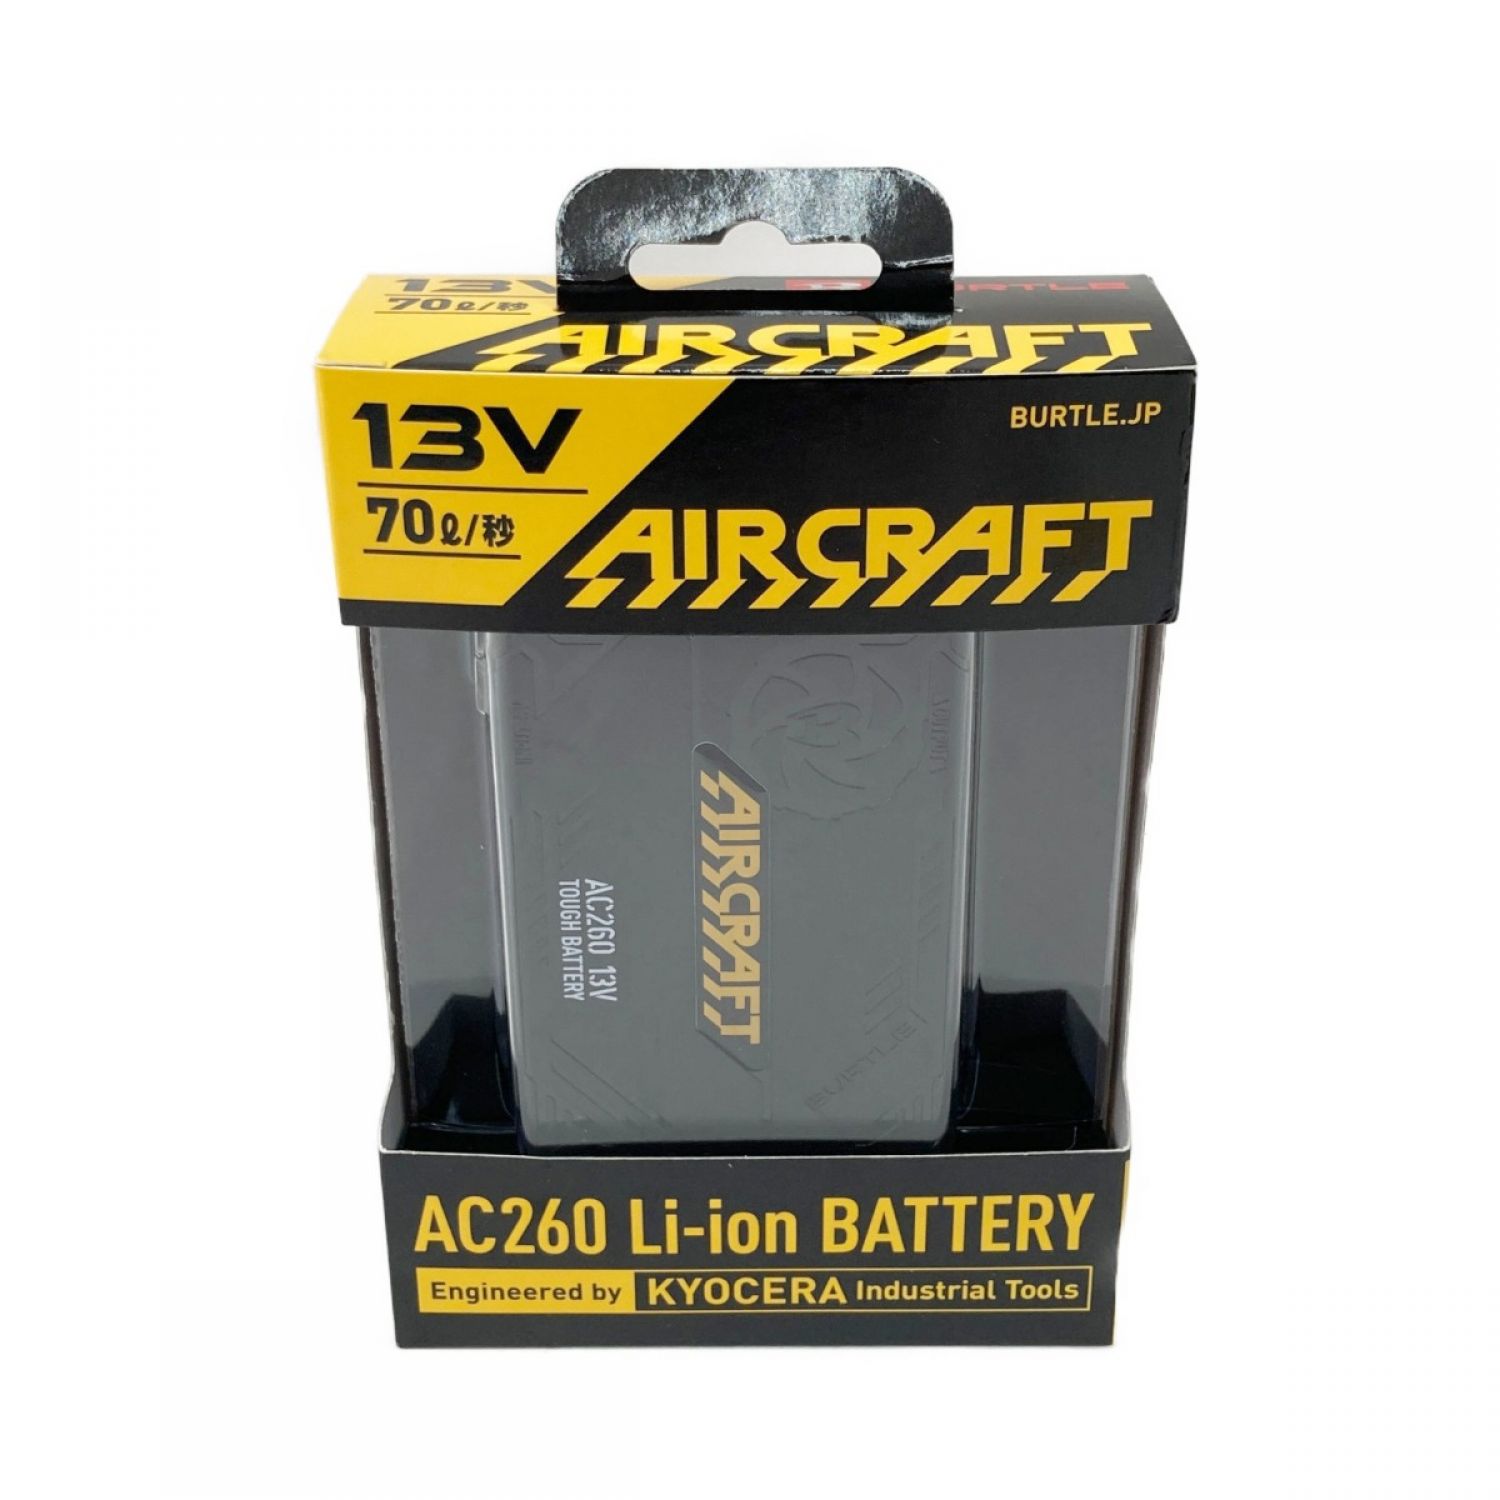 BURTLE エアークラフト リチウムイオン バッテリー AC260-35 未使用品 Sランク